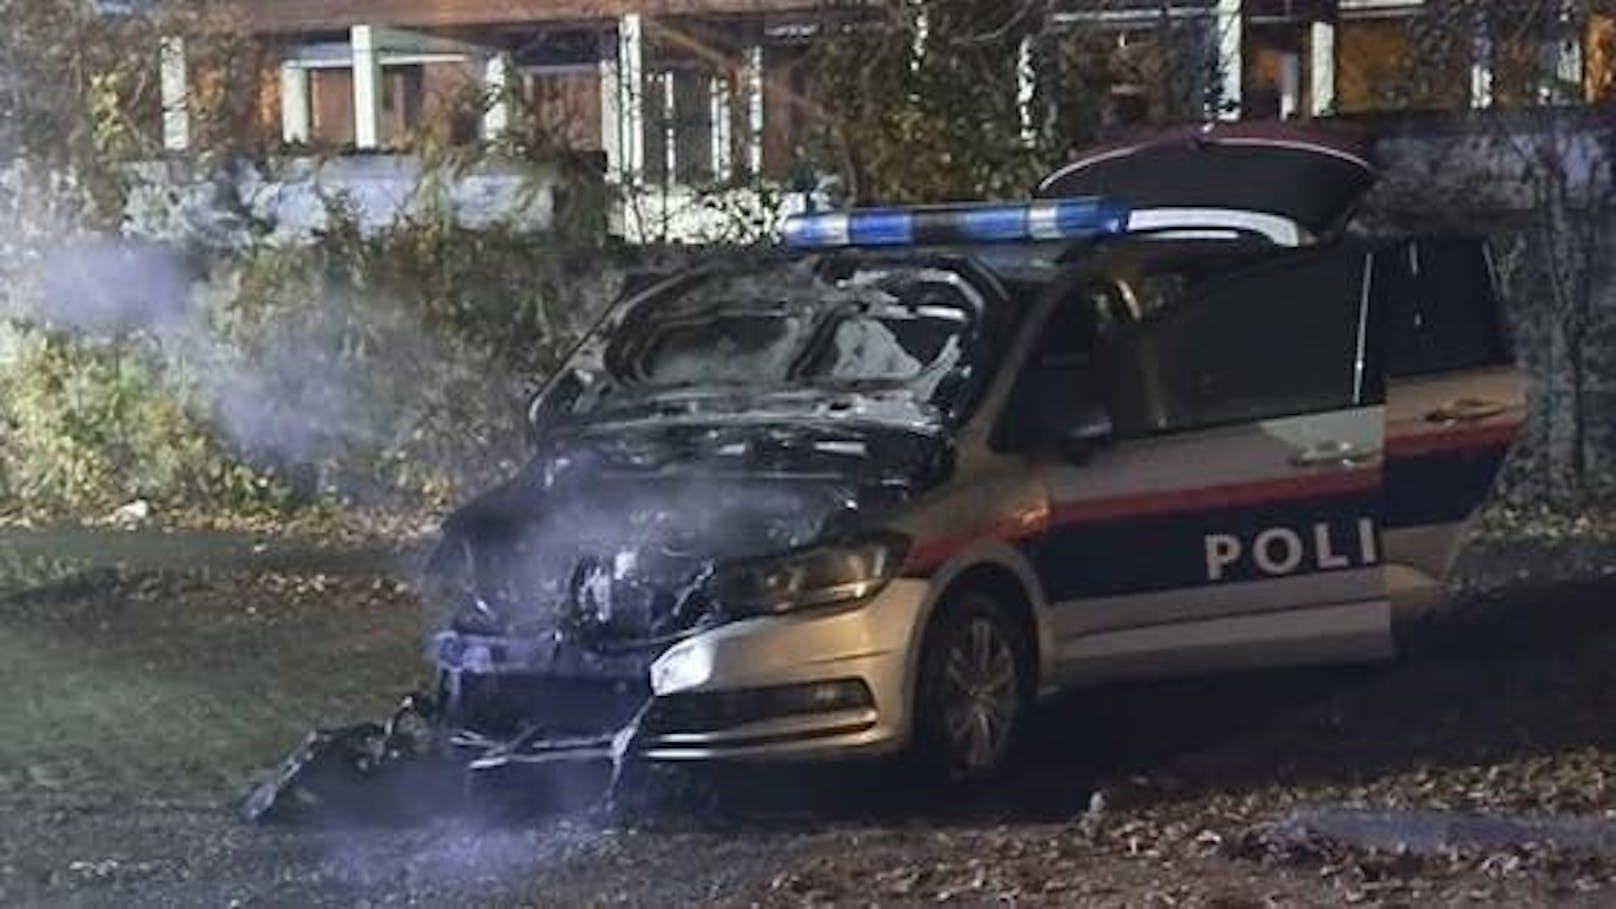 Das Polizeiauto wurde Mitte November im Linzer Stadtteil Ebelsberg angezündet.